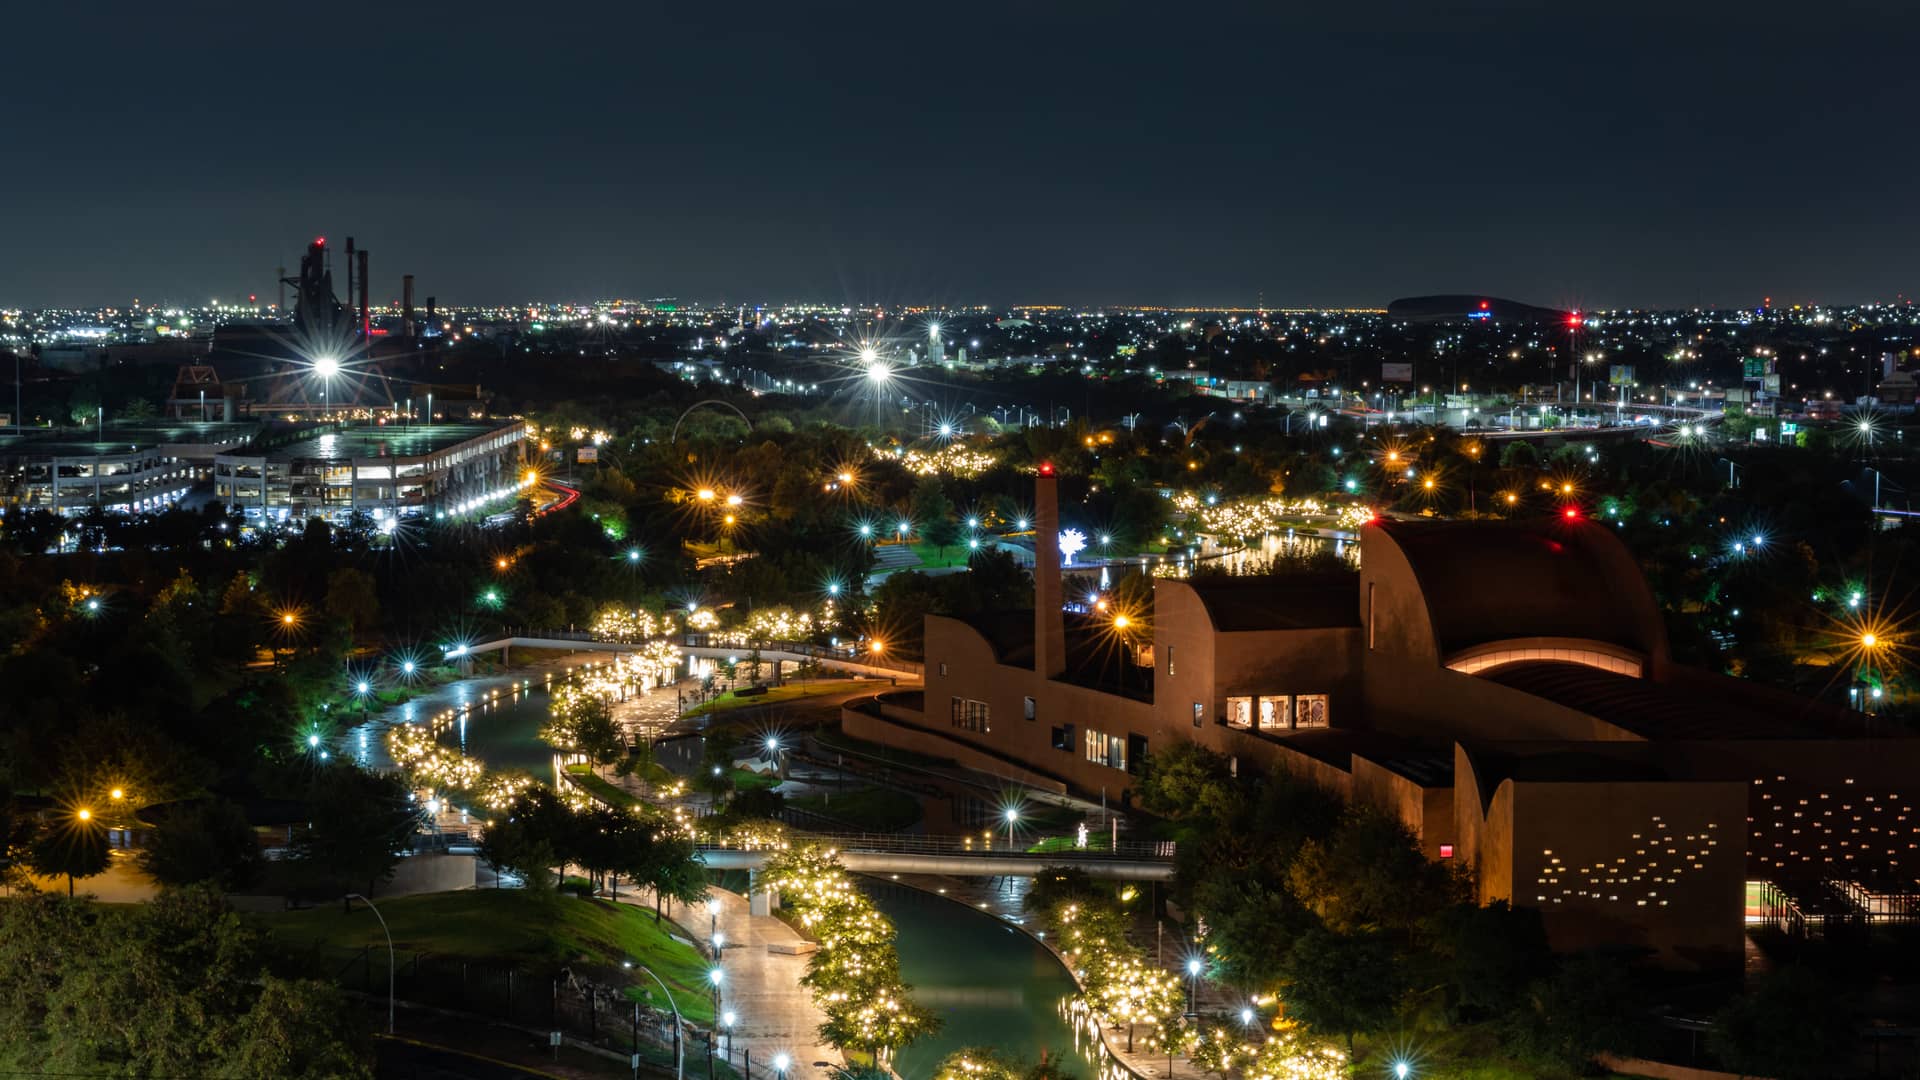 imagen nocturna de la ciudad de leon donde existen sucursales de la empresa movistar